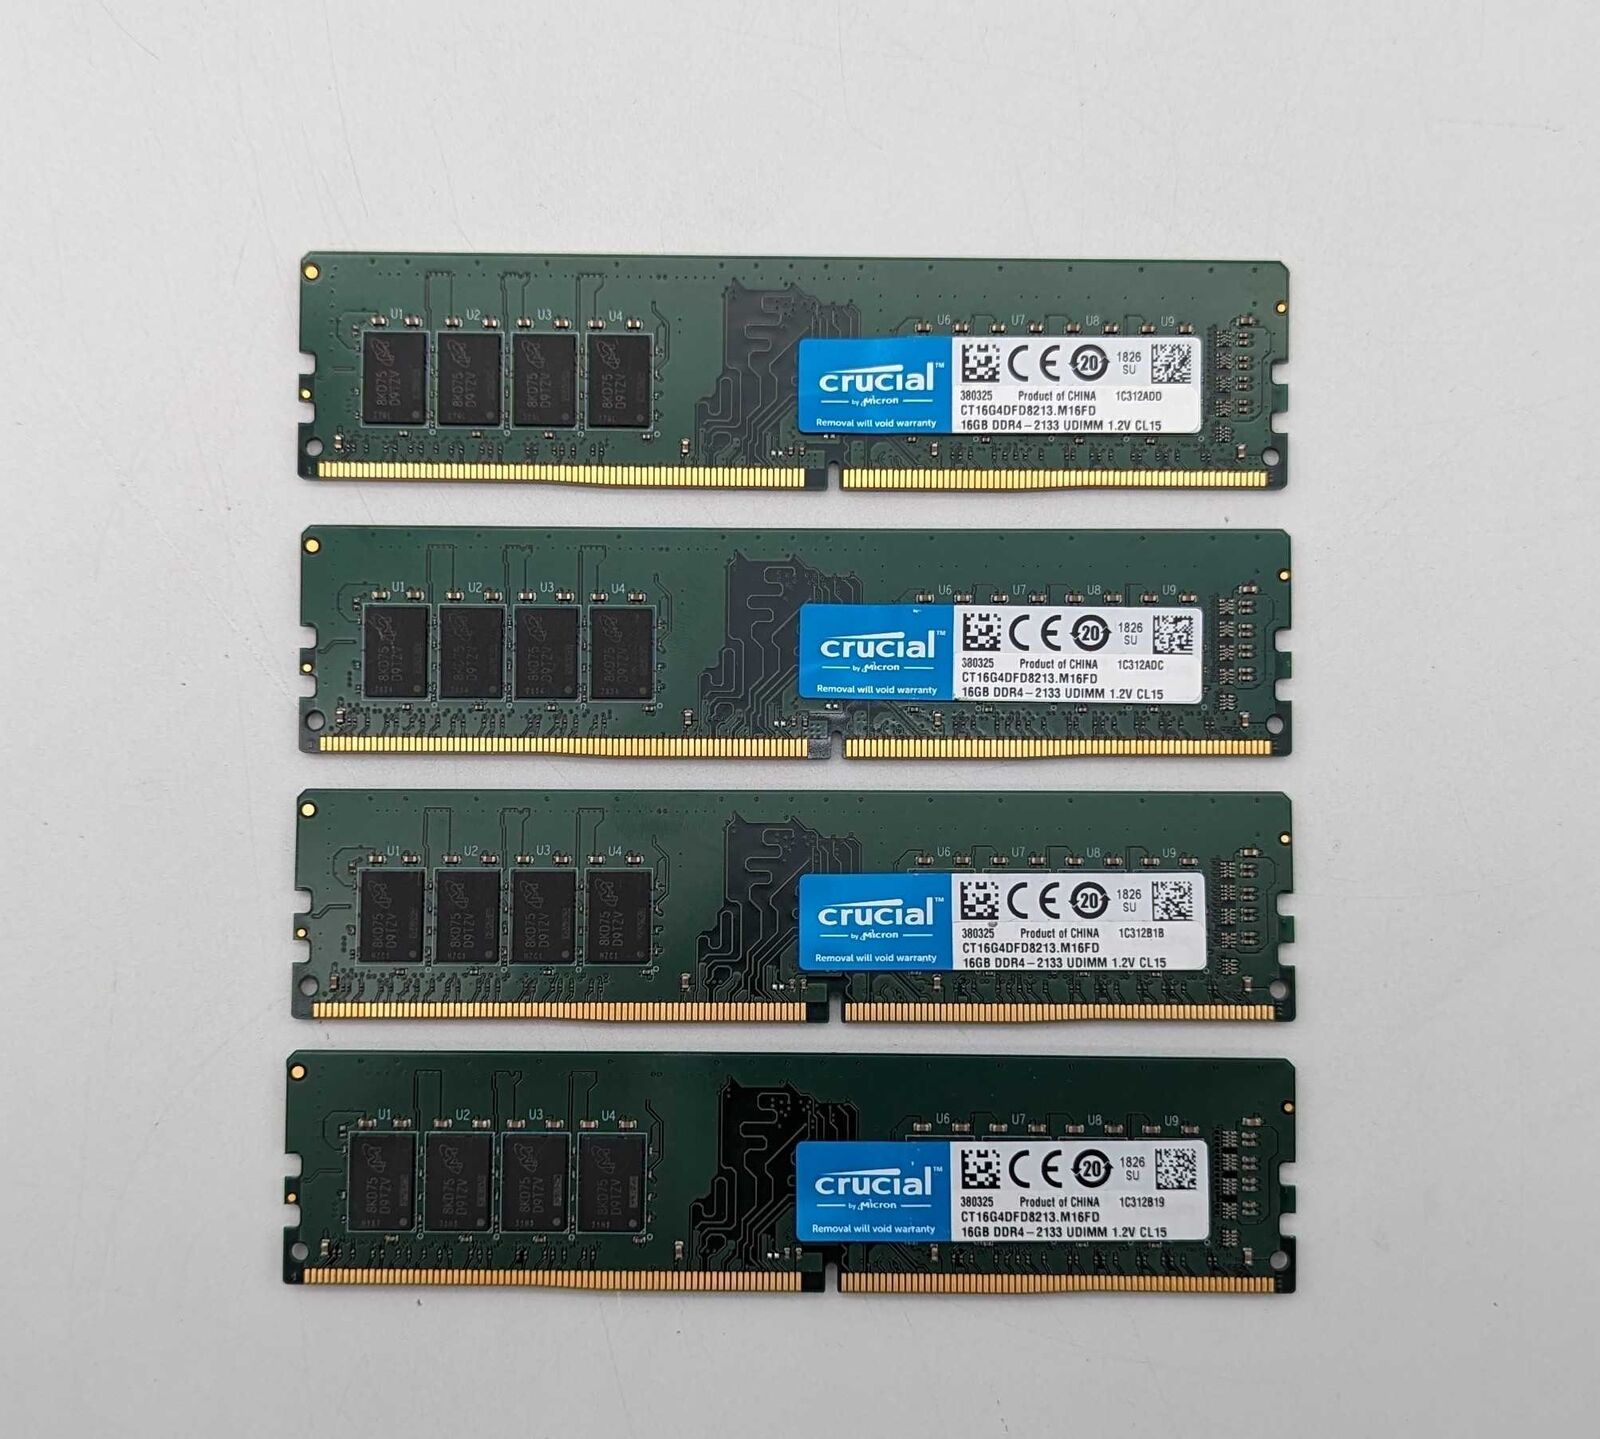 Crucial 64GB (4 x 16GB) DDR4 2133MHz UDIMM 1.2V CL15 (CT16G4DFD8213.M16FD)